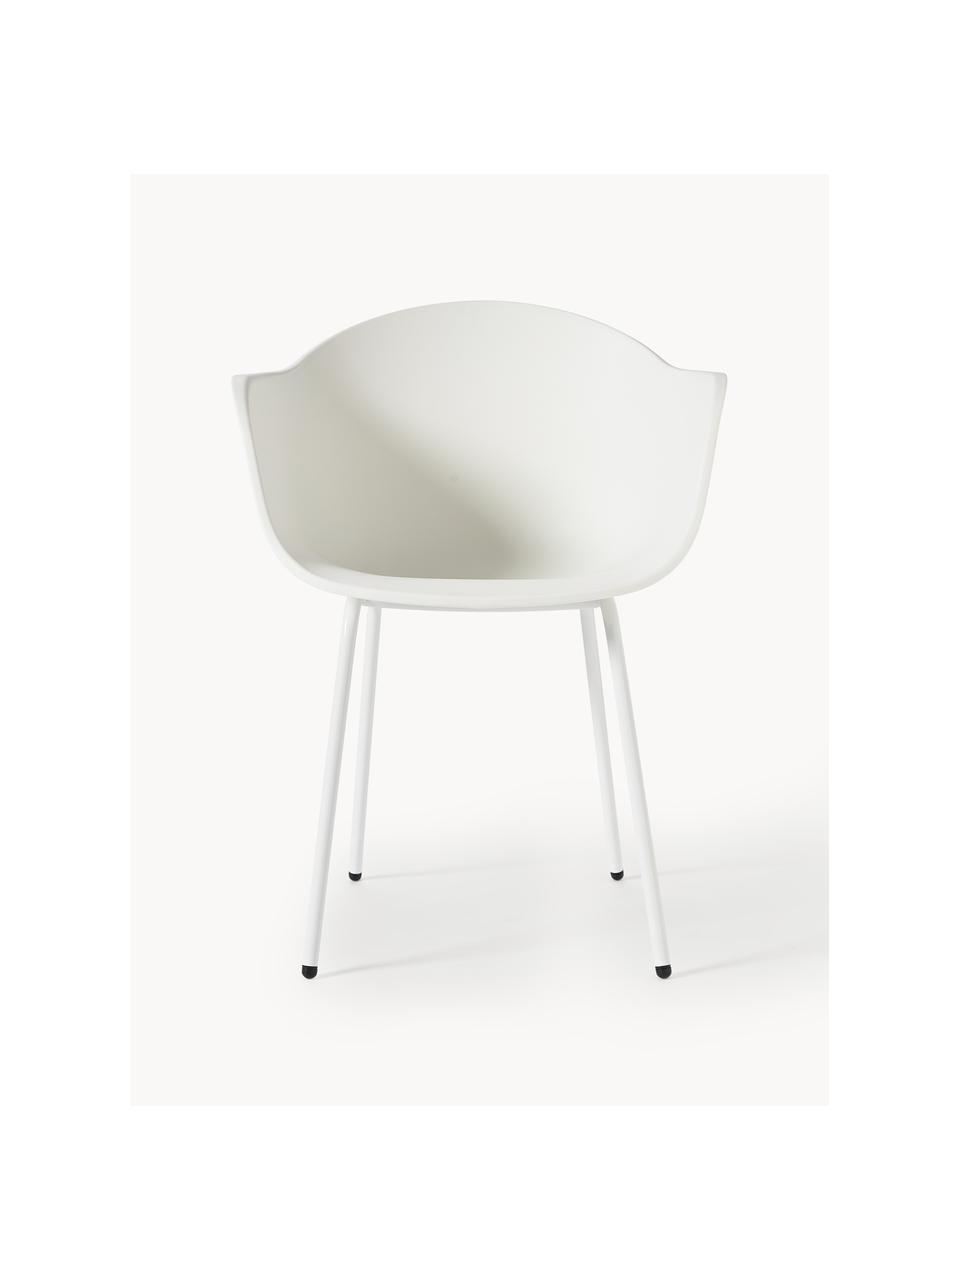 Interiérová/exteriérová židle Claire, Bílá, Š 60 cm, H 54 cm